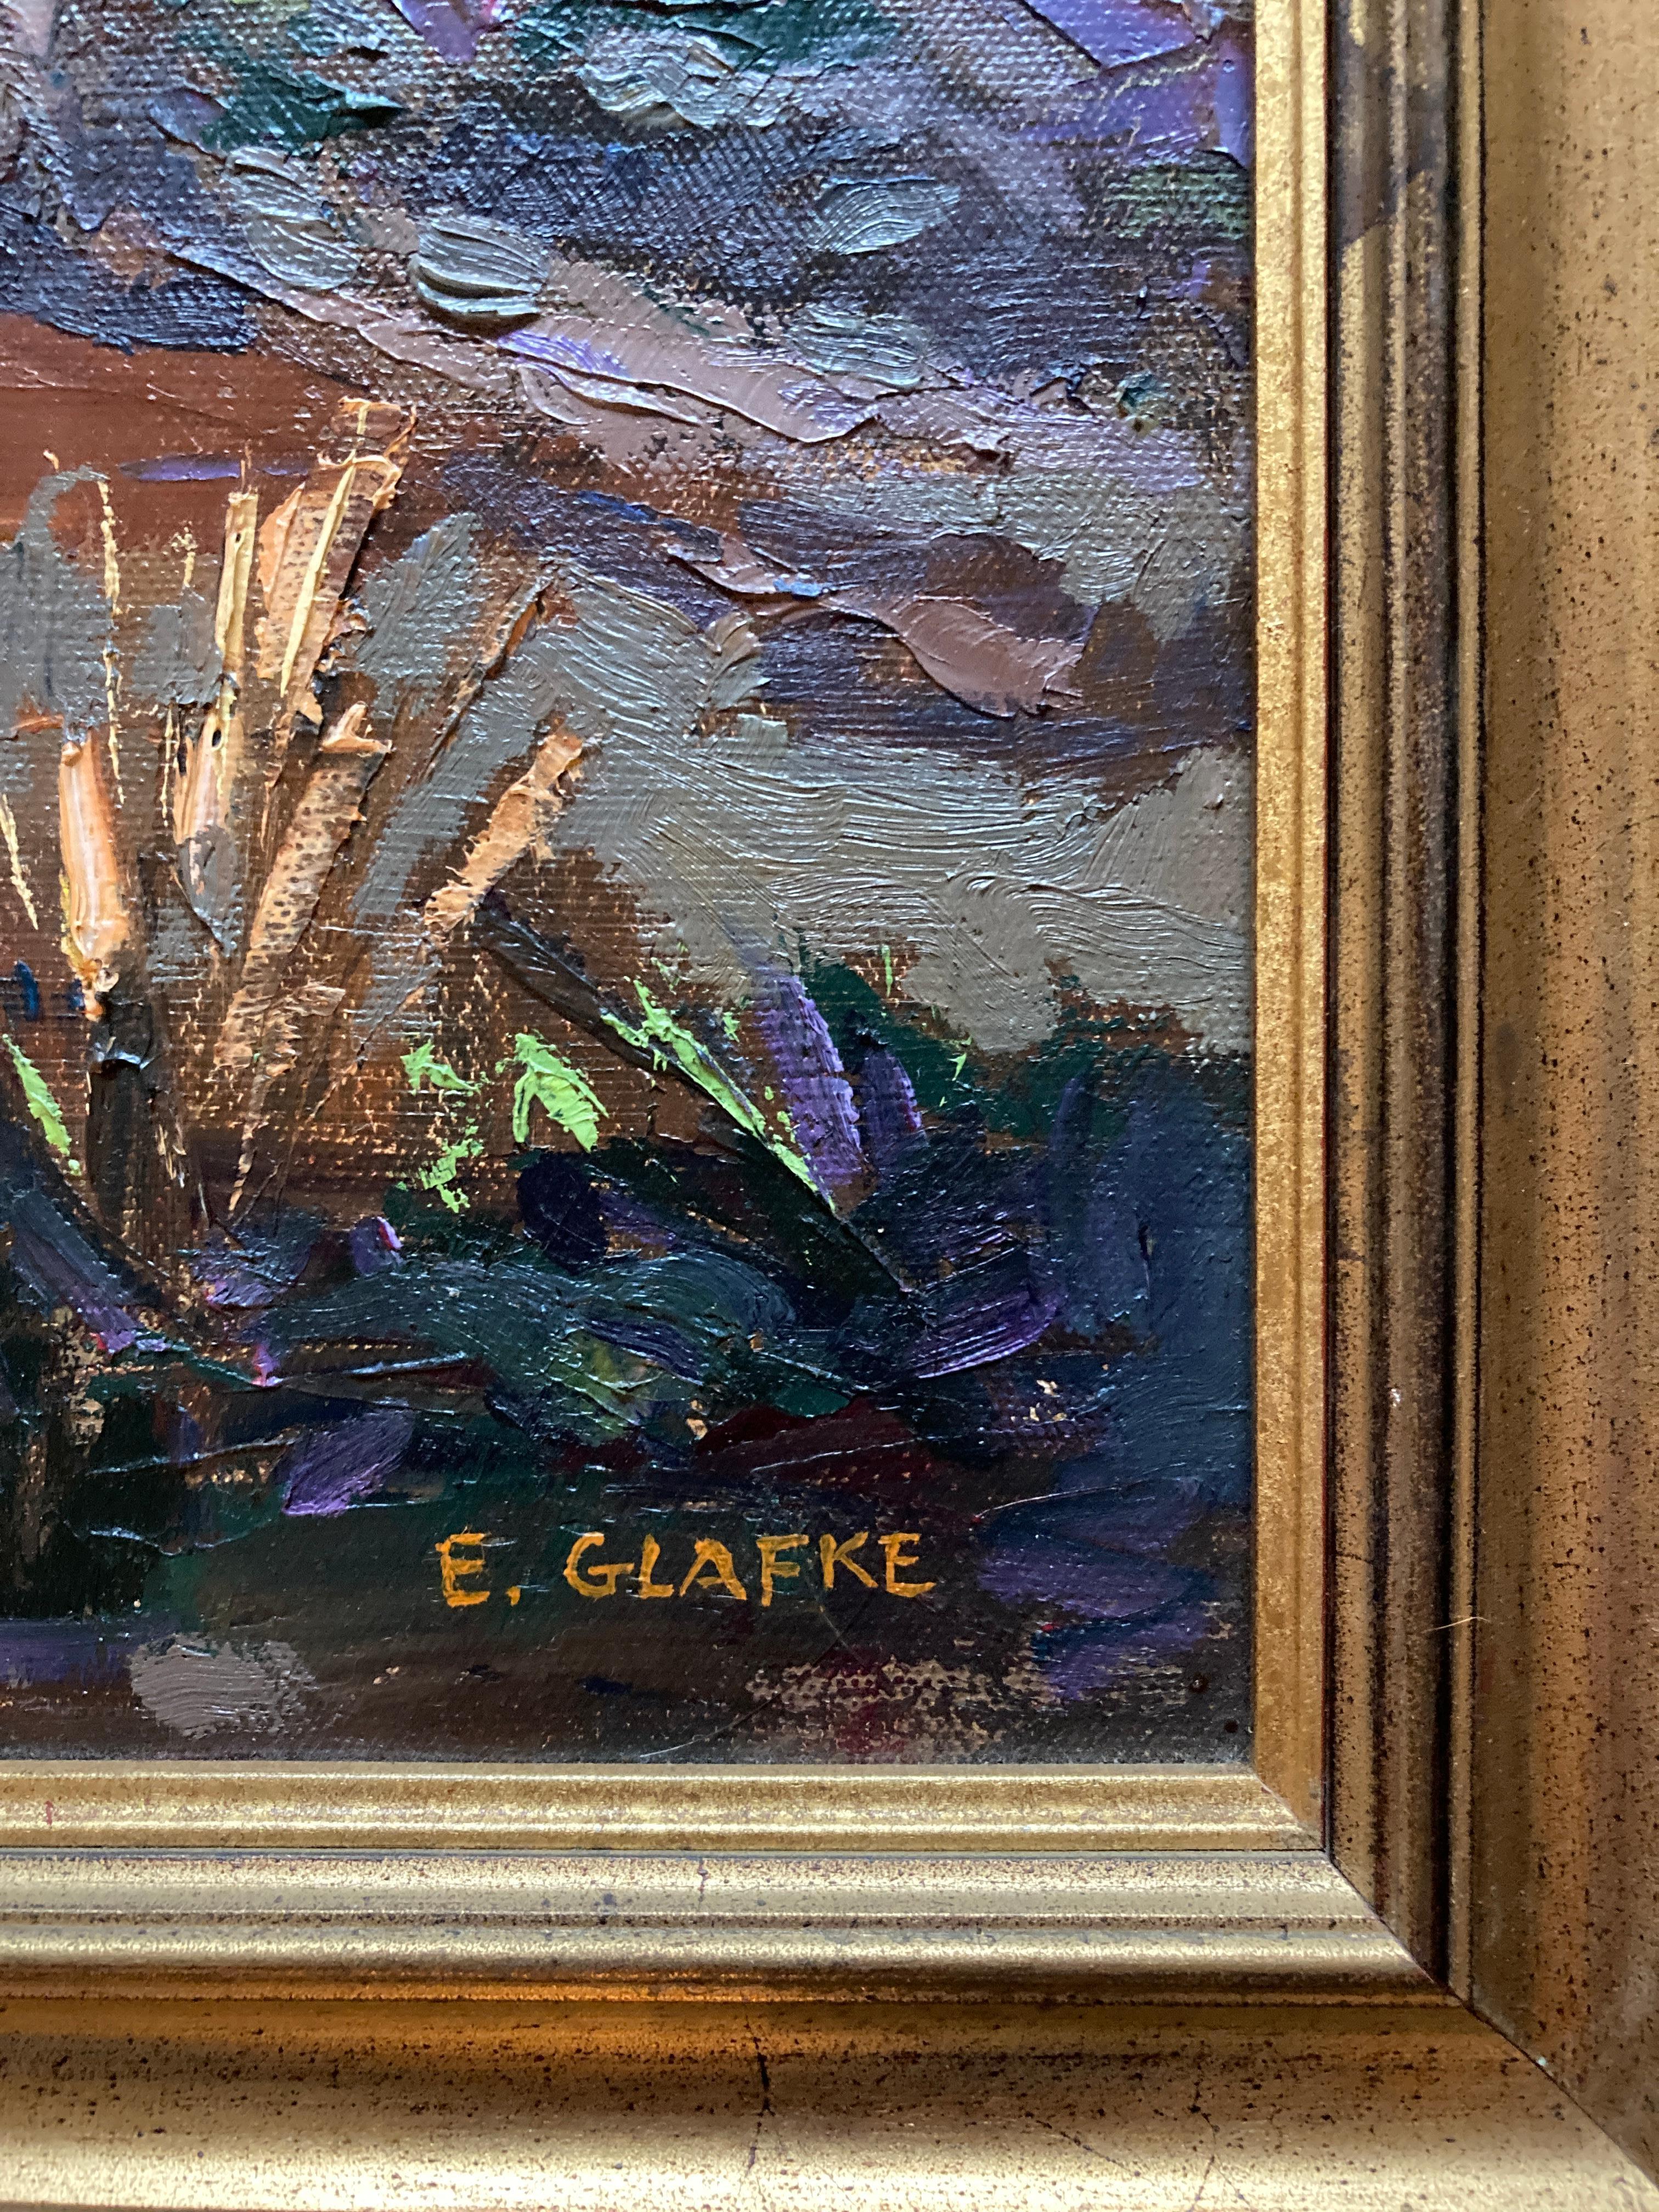 Edward Glafke 'Tiburon Forest' Impressionist Landscape Painting For Sale 3